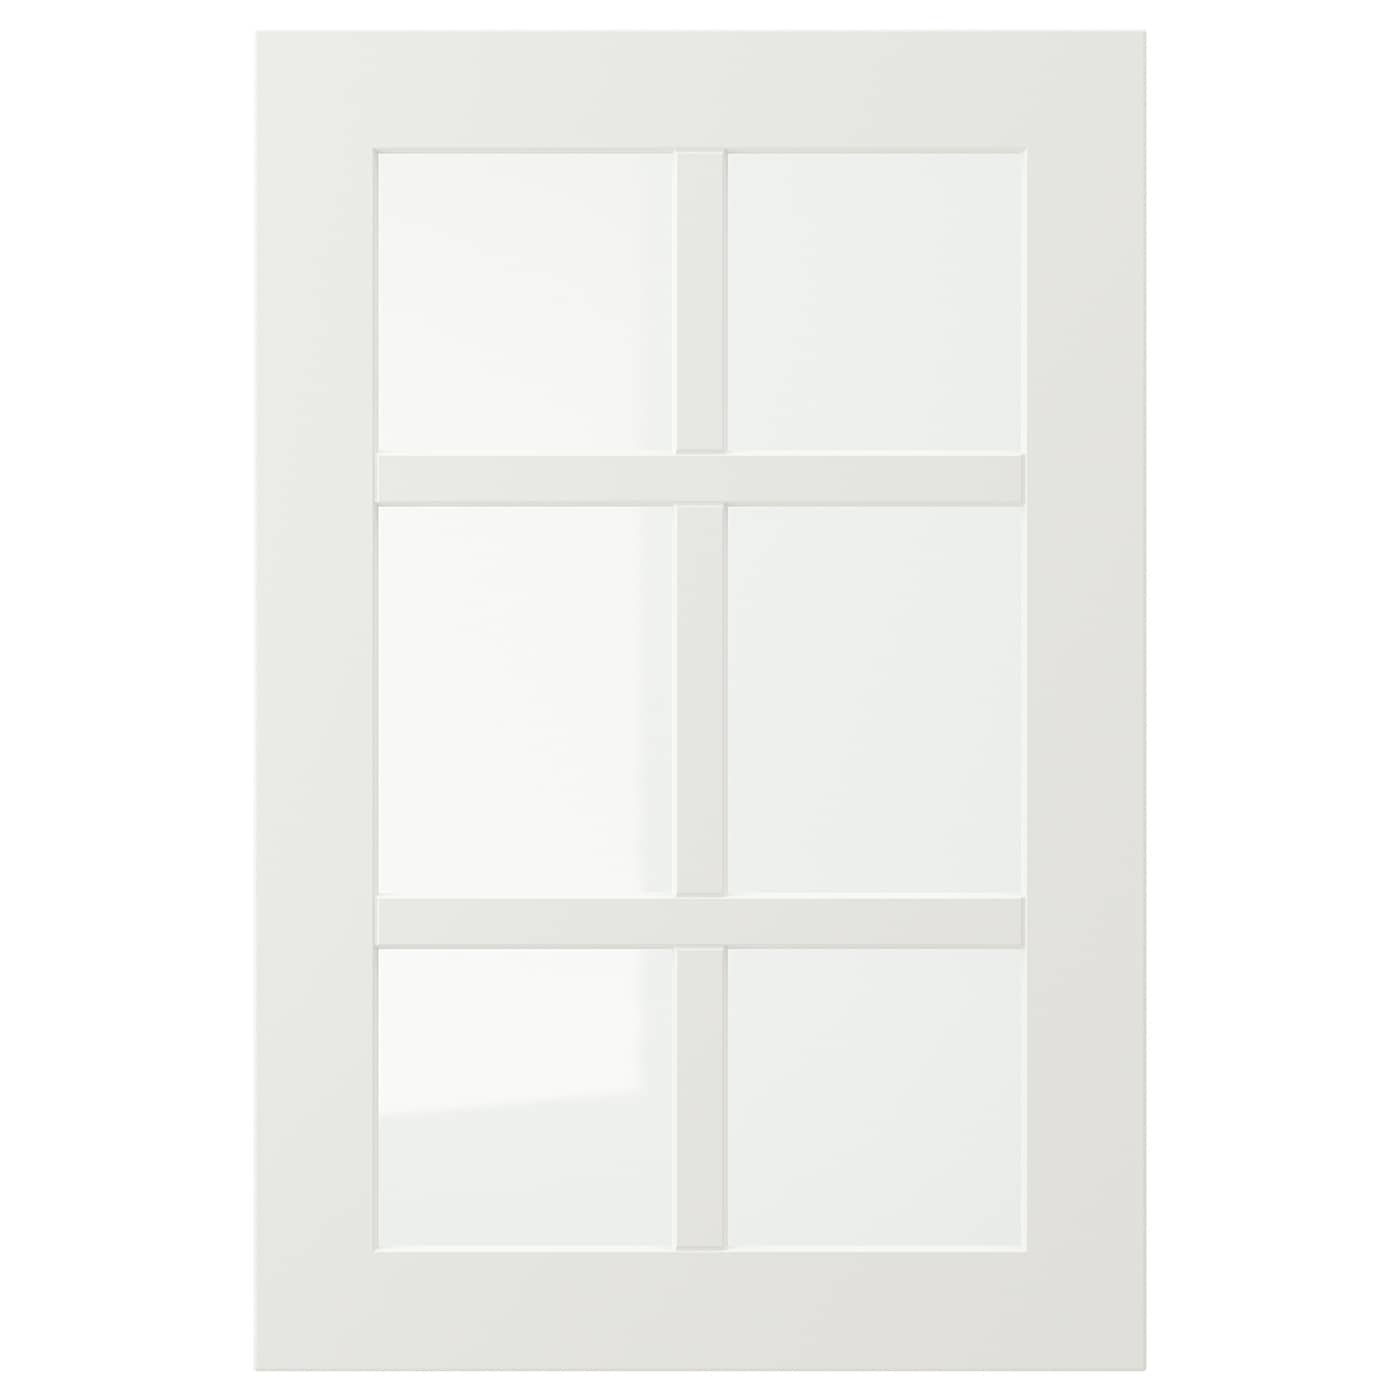 Дверца со стеклом - IKEA STENSUND, 60х40 см, белый, СТЕНСУНД ИКЕА